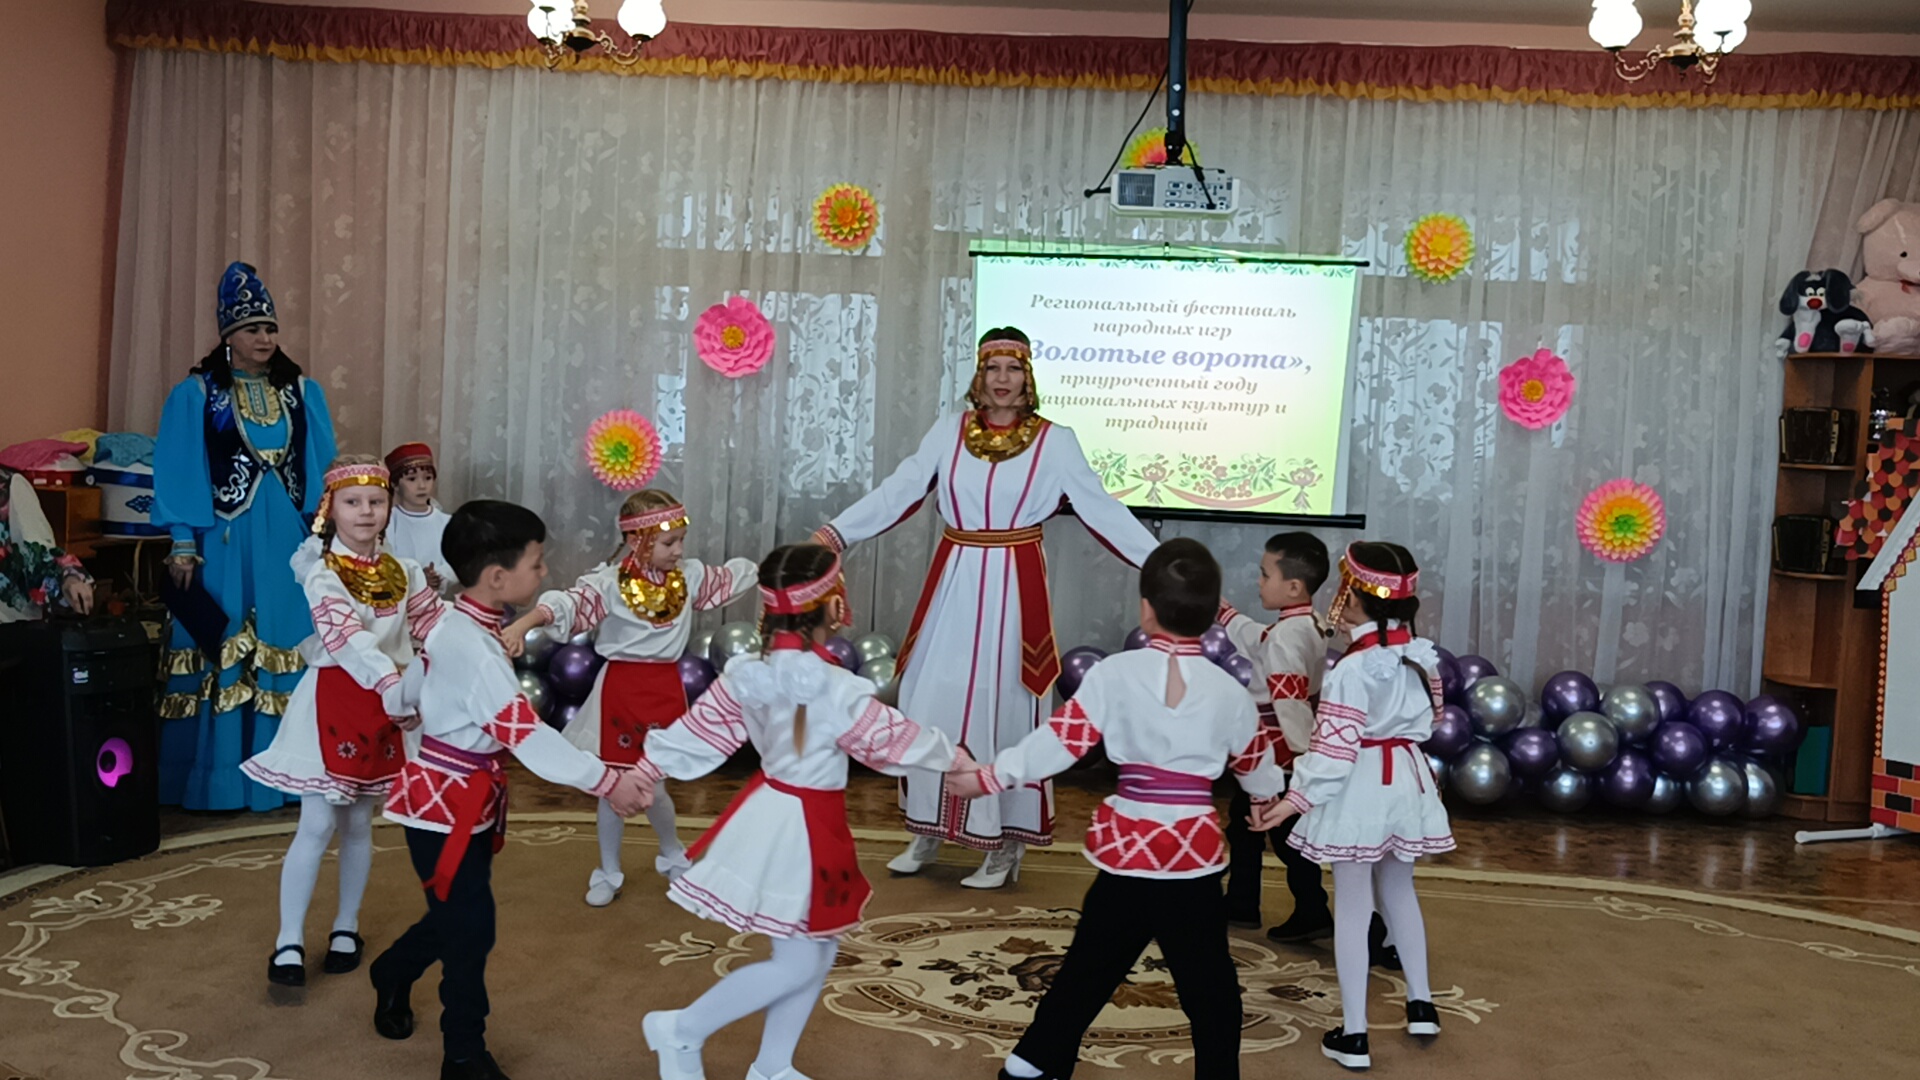 Сценарий  регионального фестиваля народных  игр «Золотые ворота», приуроченный году национальных культур и традиций в Республике Татарстан